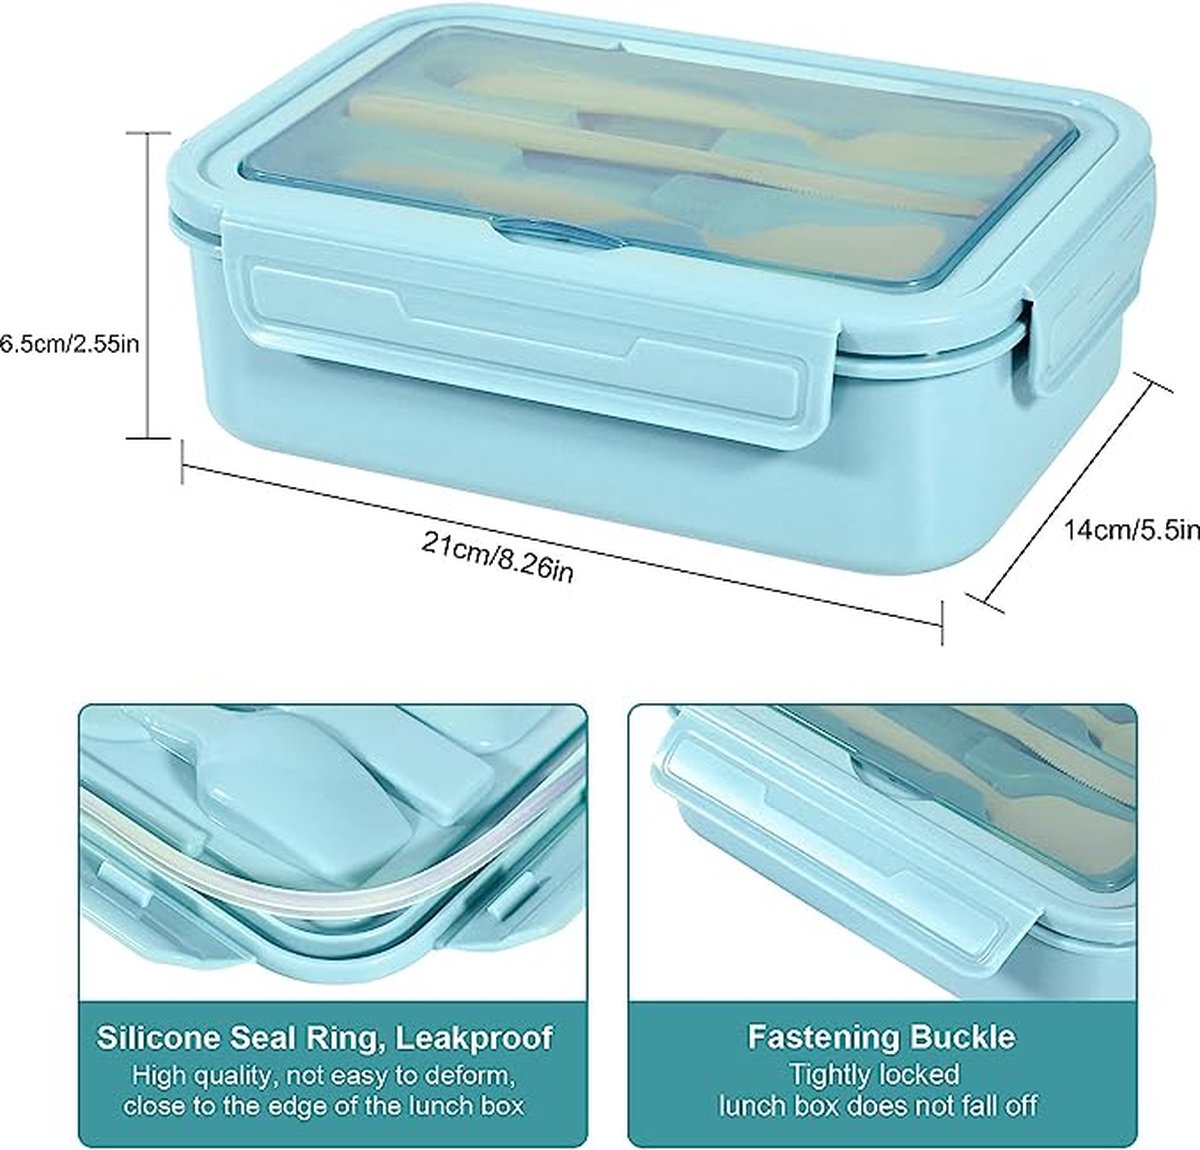 Boîte à lunch de 1400 ml pour enfants et adultes, boîte à lunch Bento box  avec 3 compartiments et couverts, boîte à collations micro-ondes chauffée  (kaki)